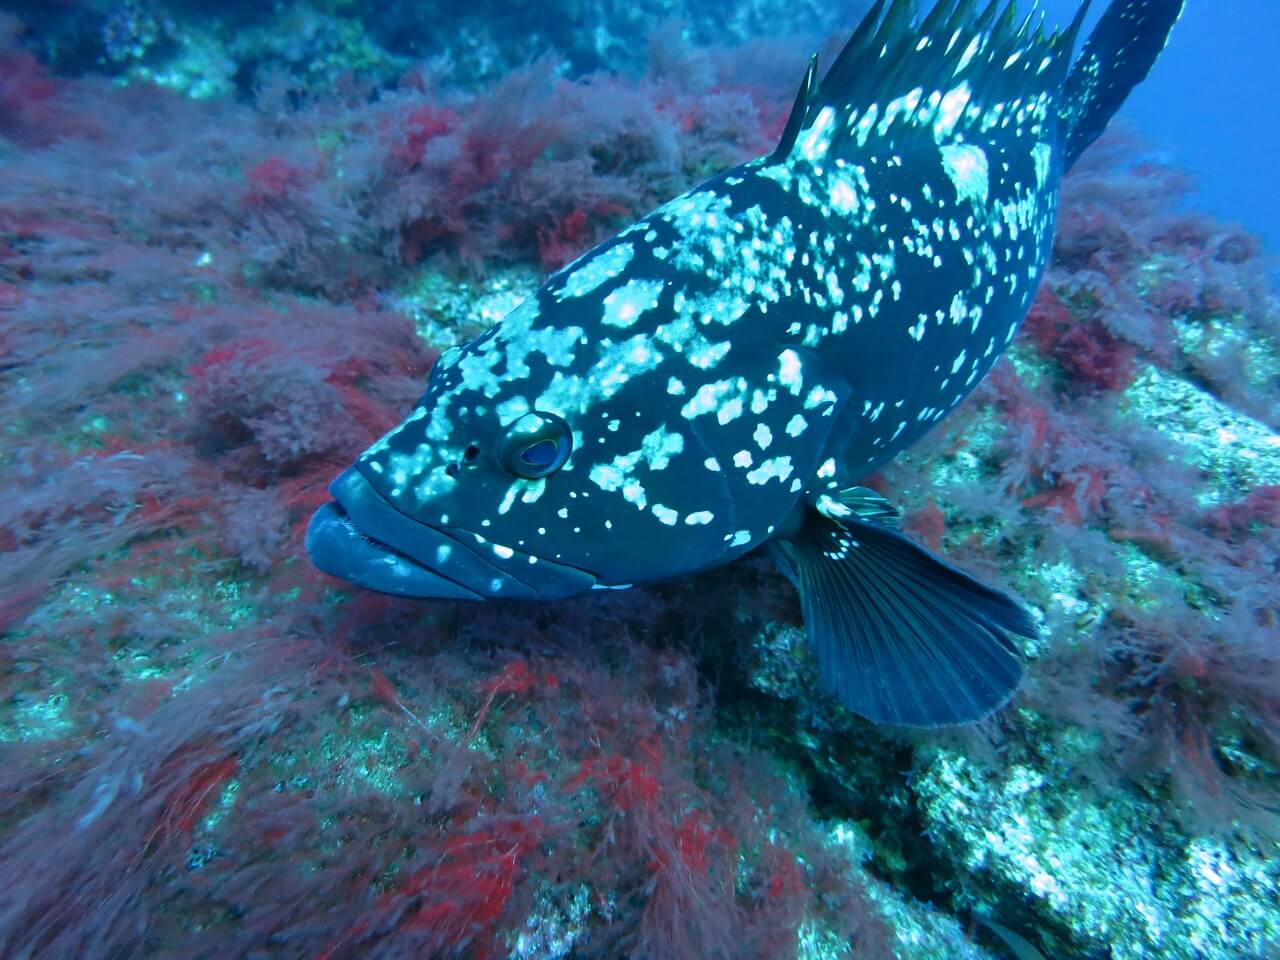 https://pixabay.com/en/grouper-fish-underwater-water-1275369/